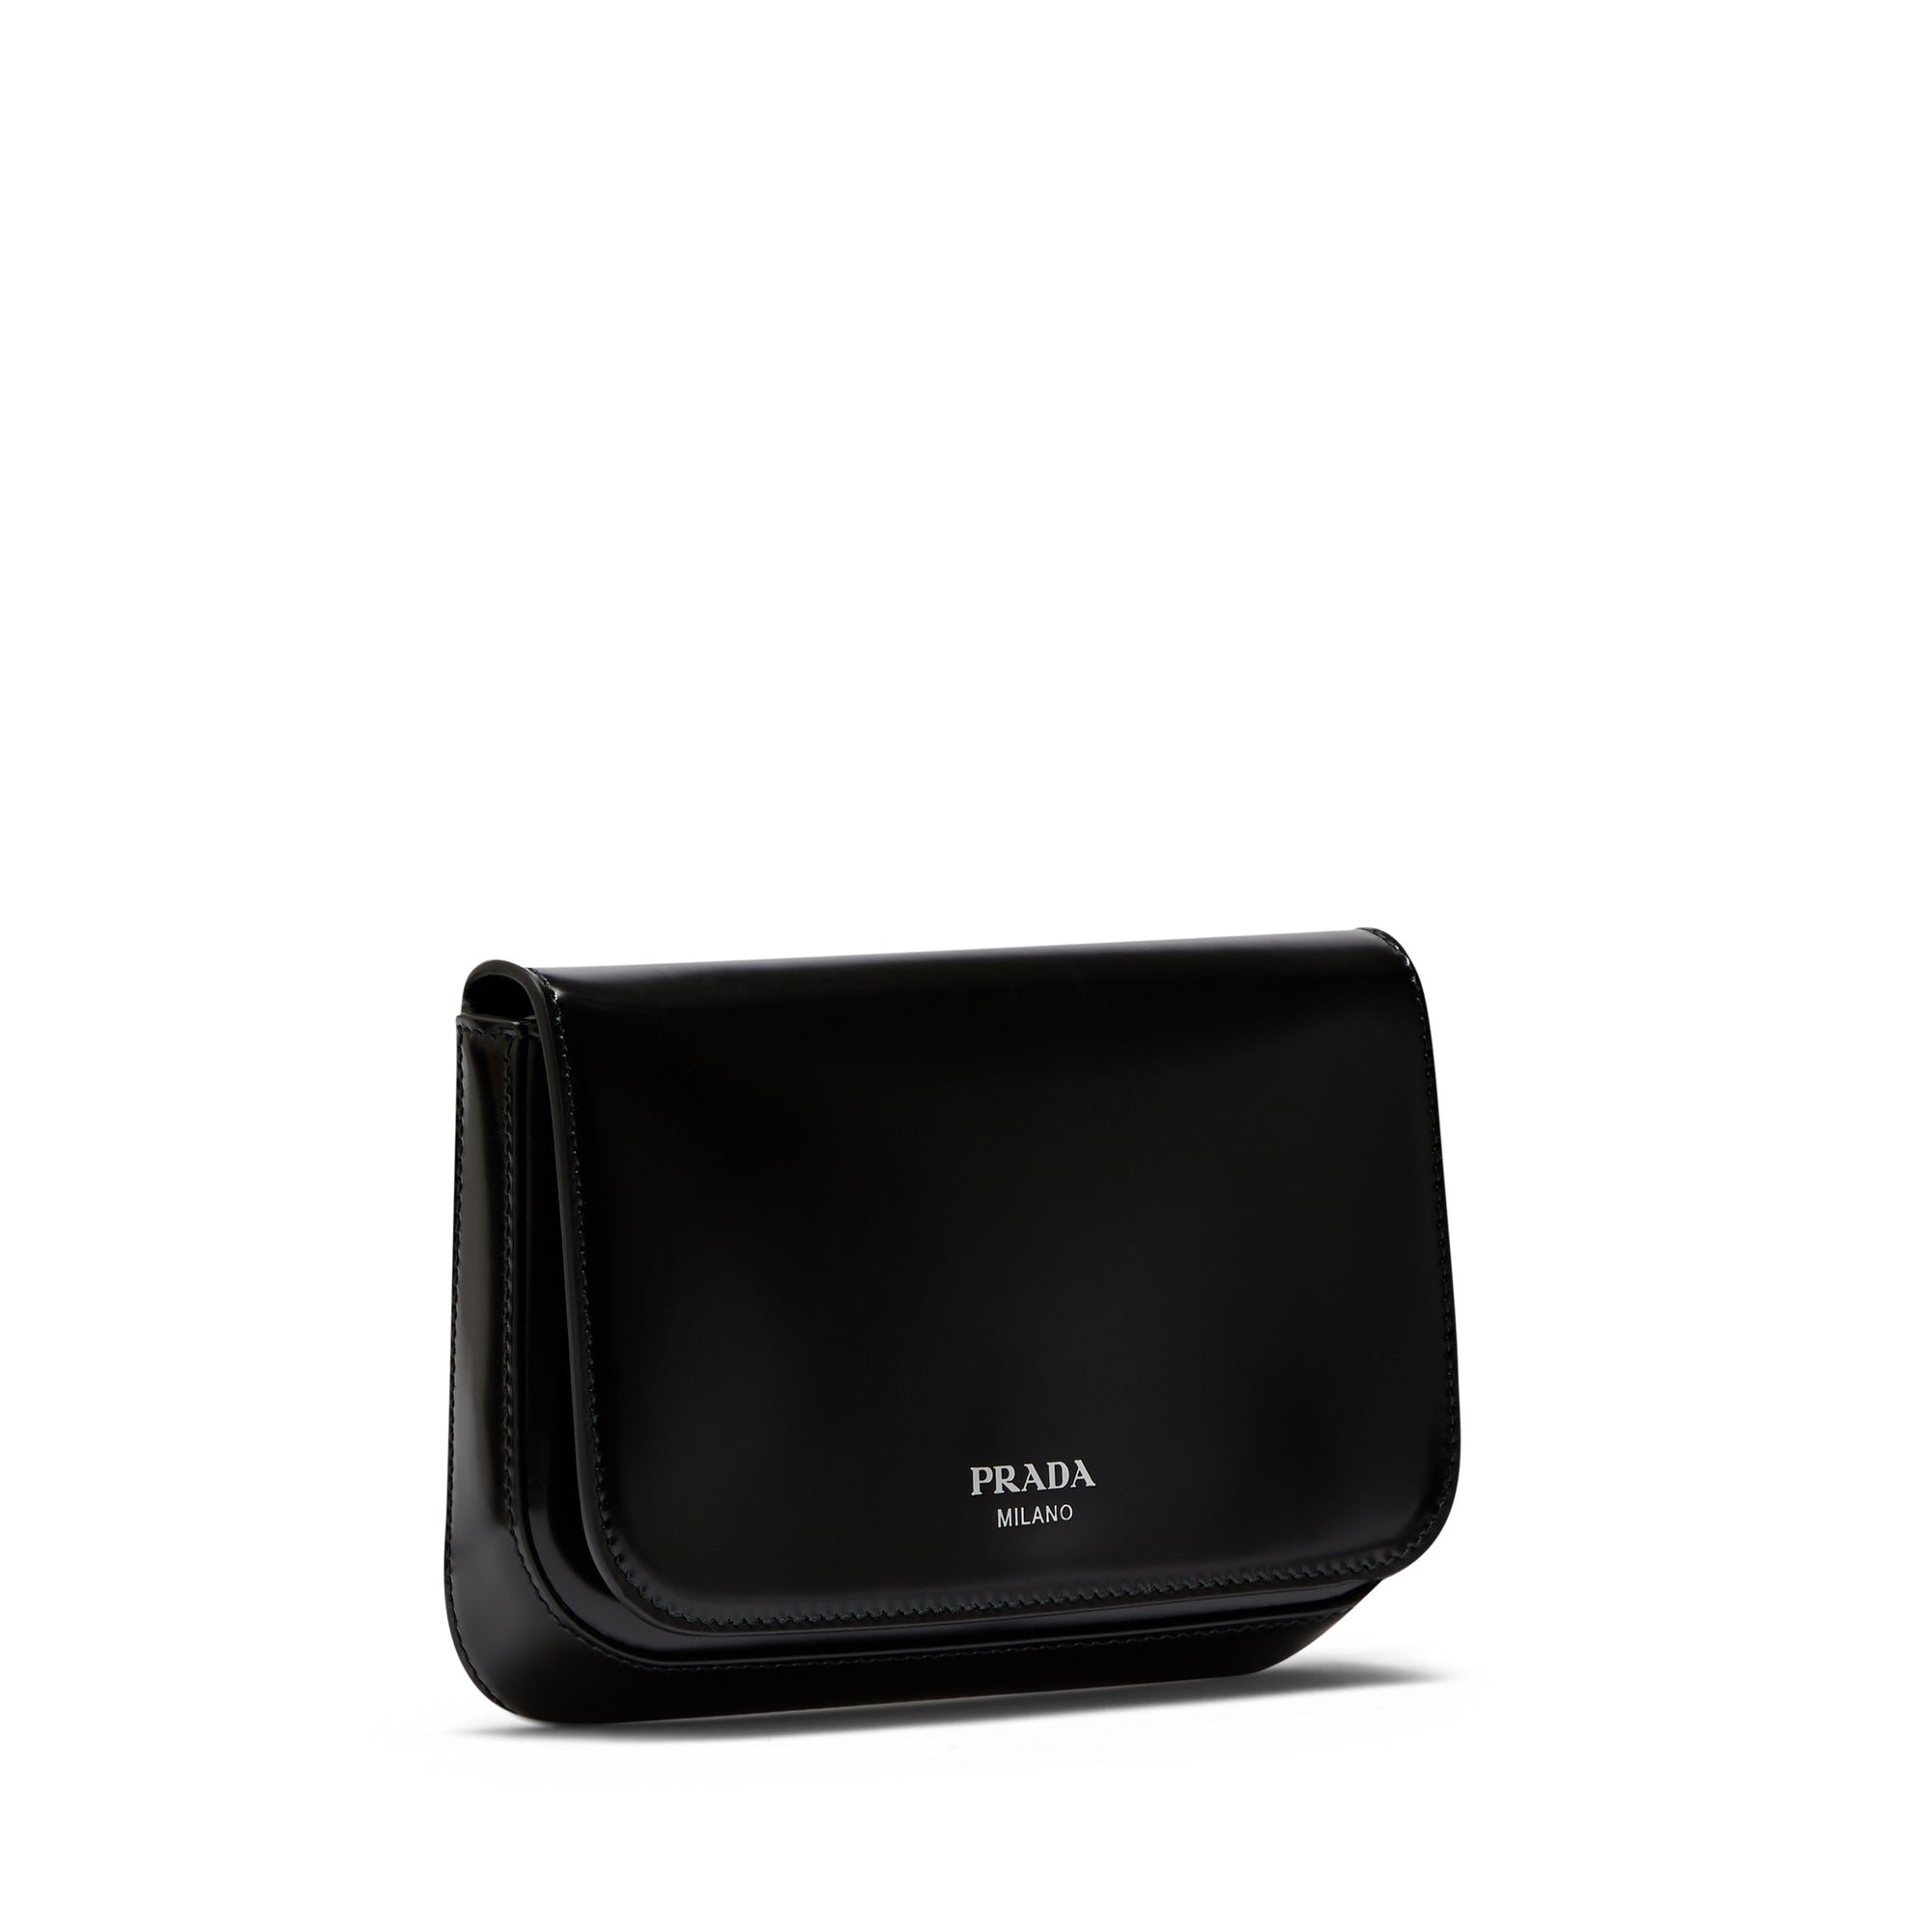 Prada - Men’s Brushed Leather Mini Bag - (Black) view 2